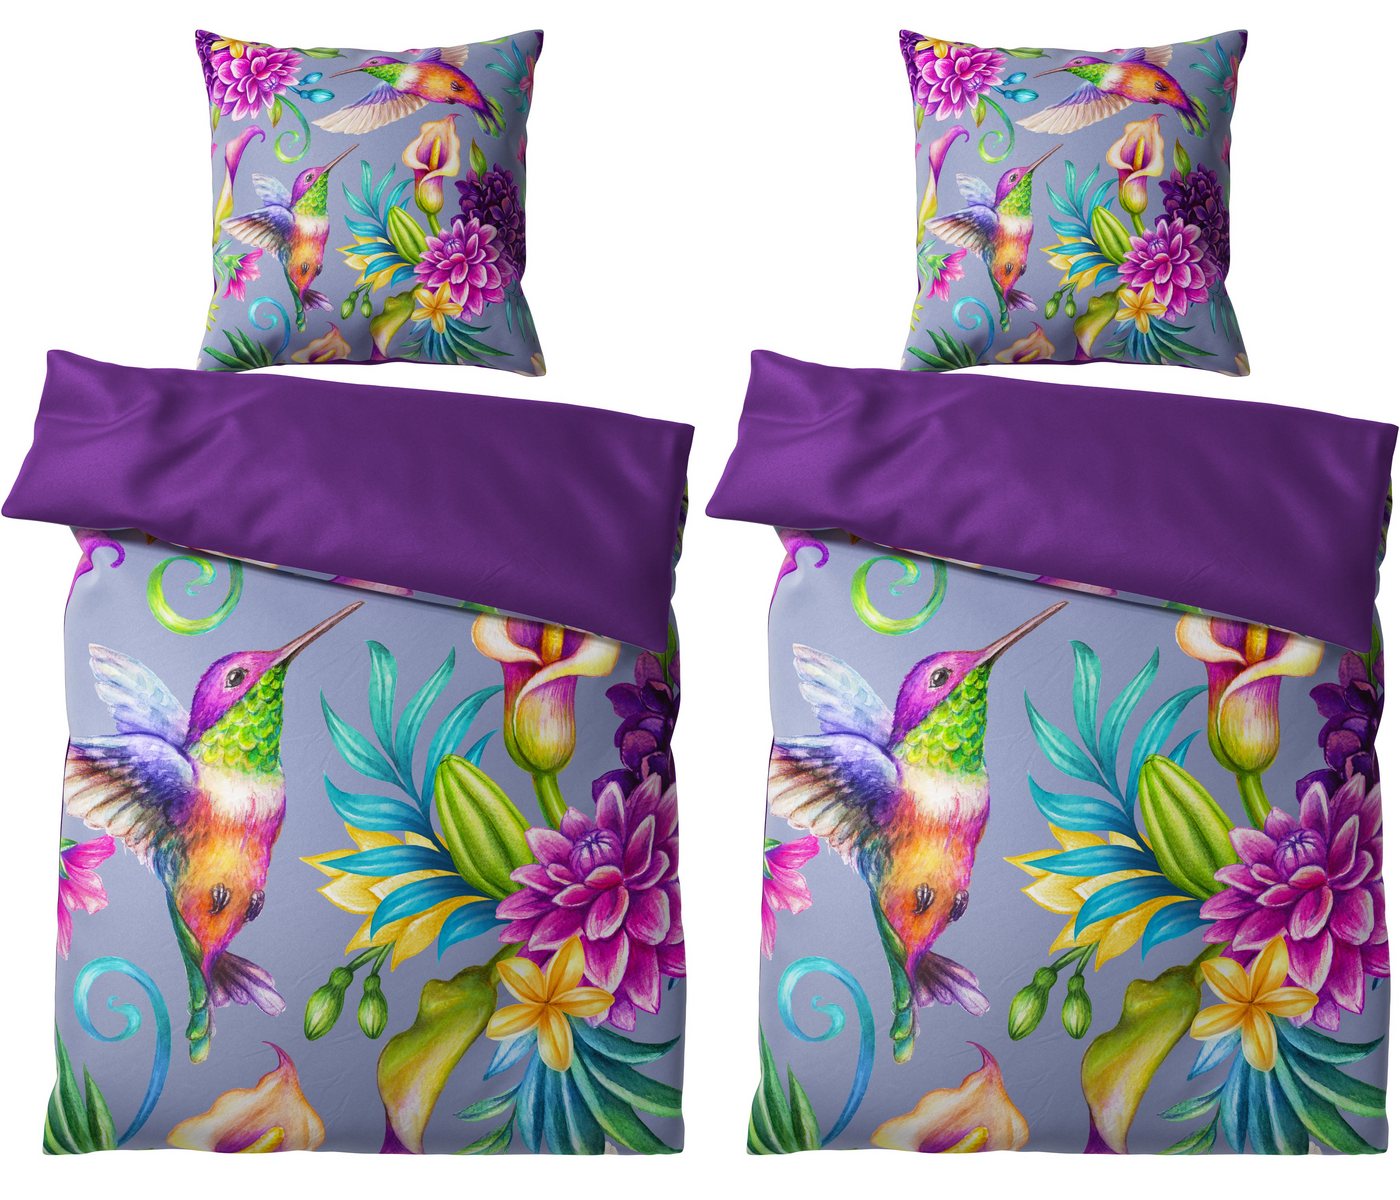 Bettwäsche Kolibri 135x200 cm, Bettbezug und Kissenbezug, Sanilo, Baumwolle, 4 teilig, Reißverschluss von Sanilo